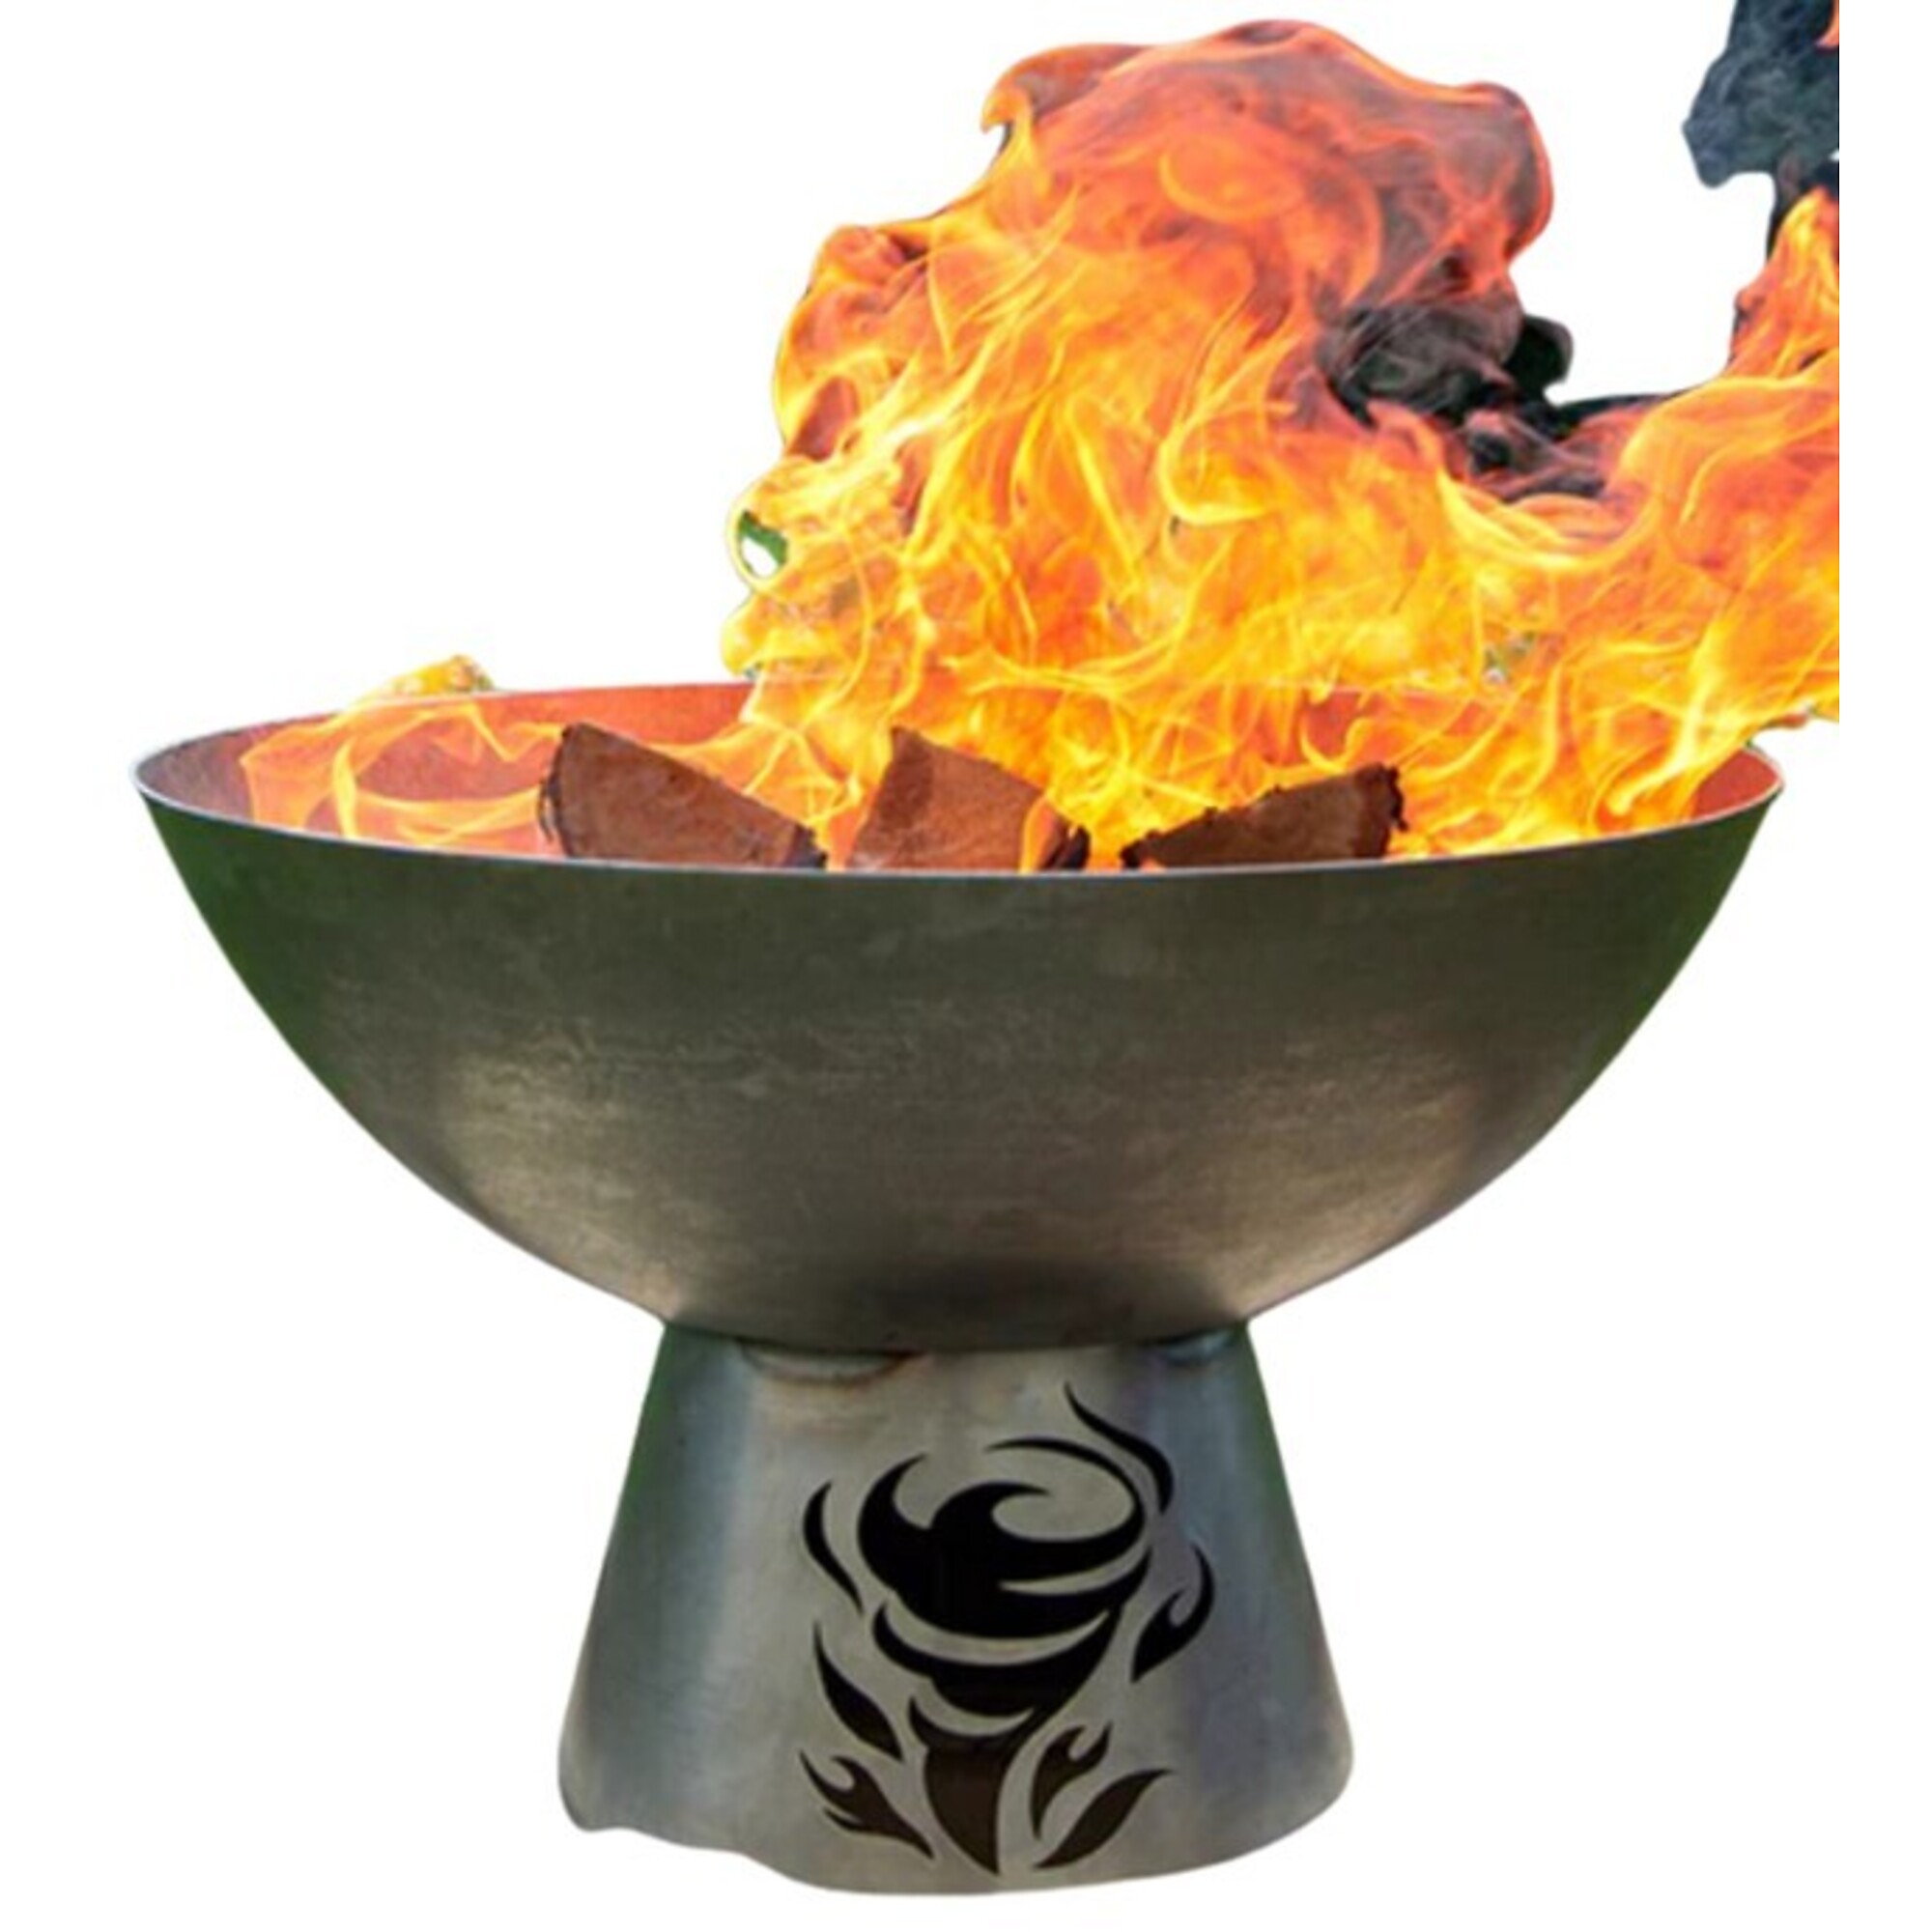 Buck, 24â Carbon Steel Fire Pit Bowl with Stand, Diameter 25 in, Model BU XTREME FIRE BOWL